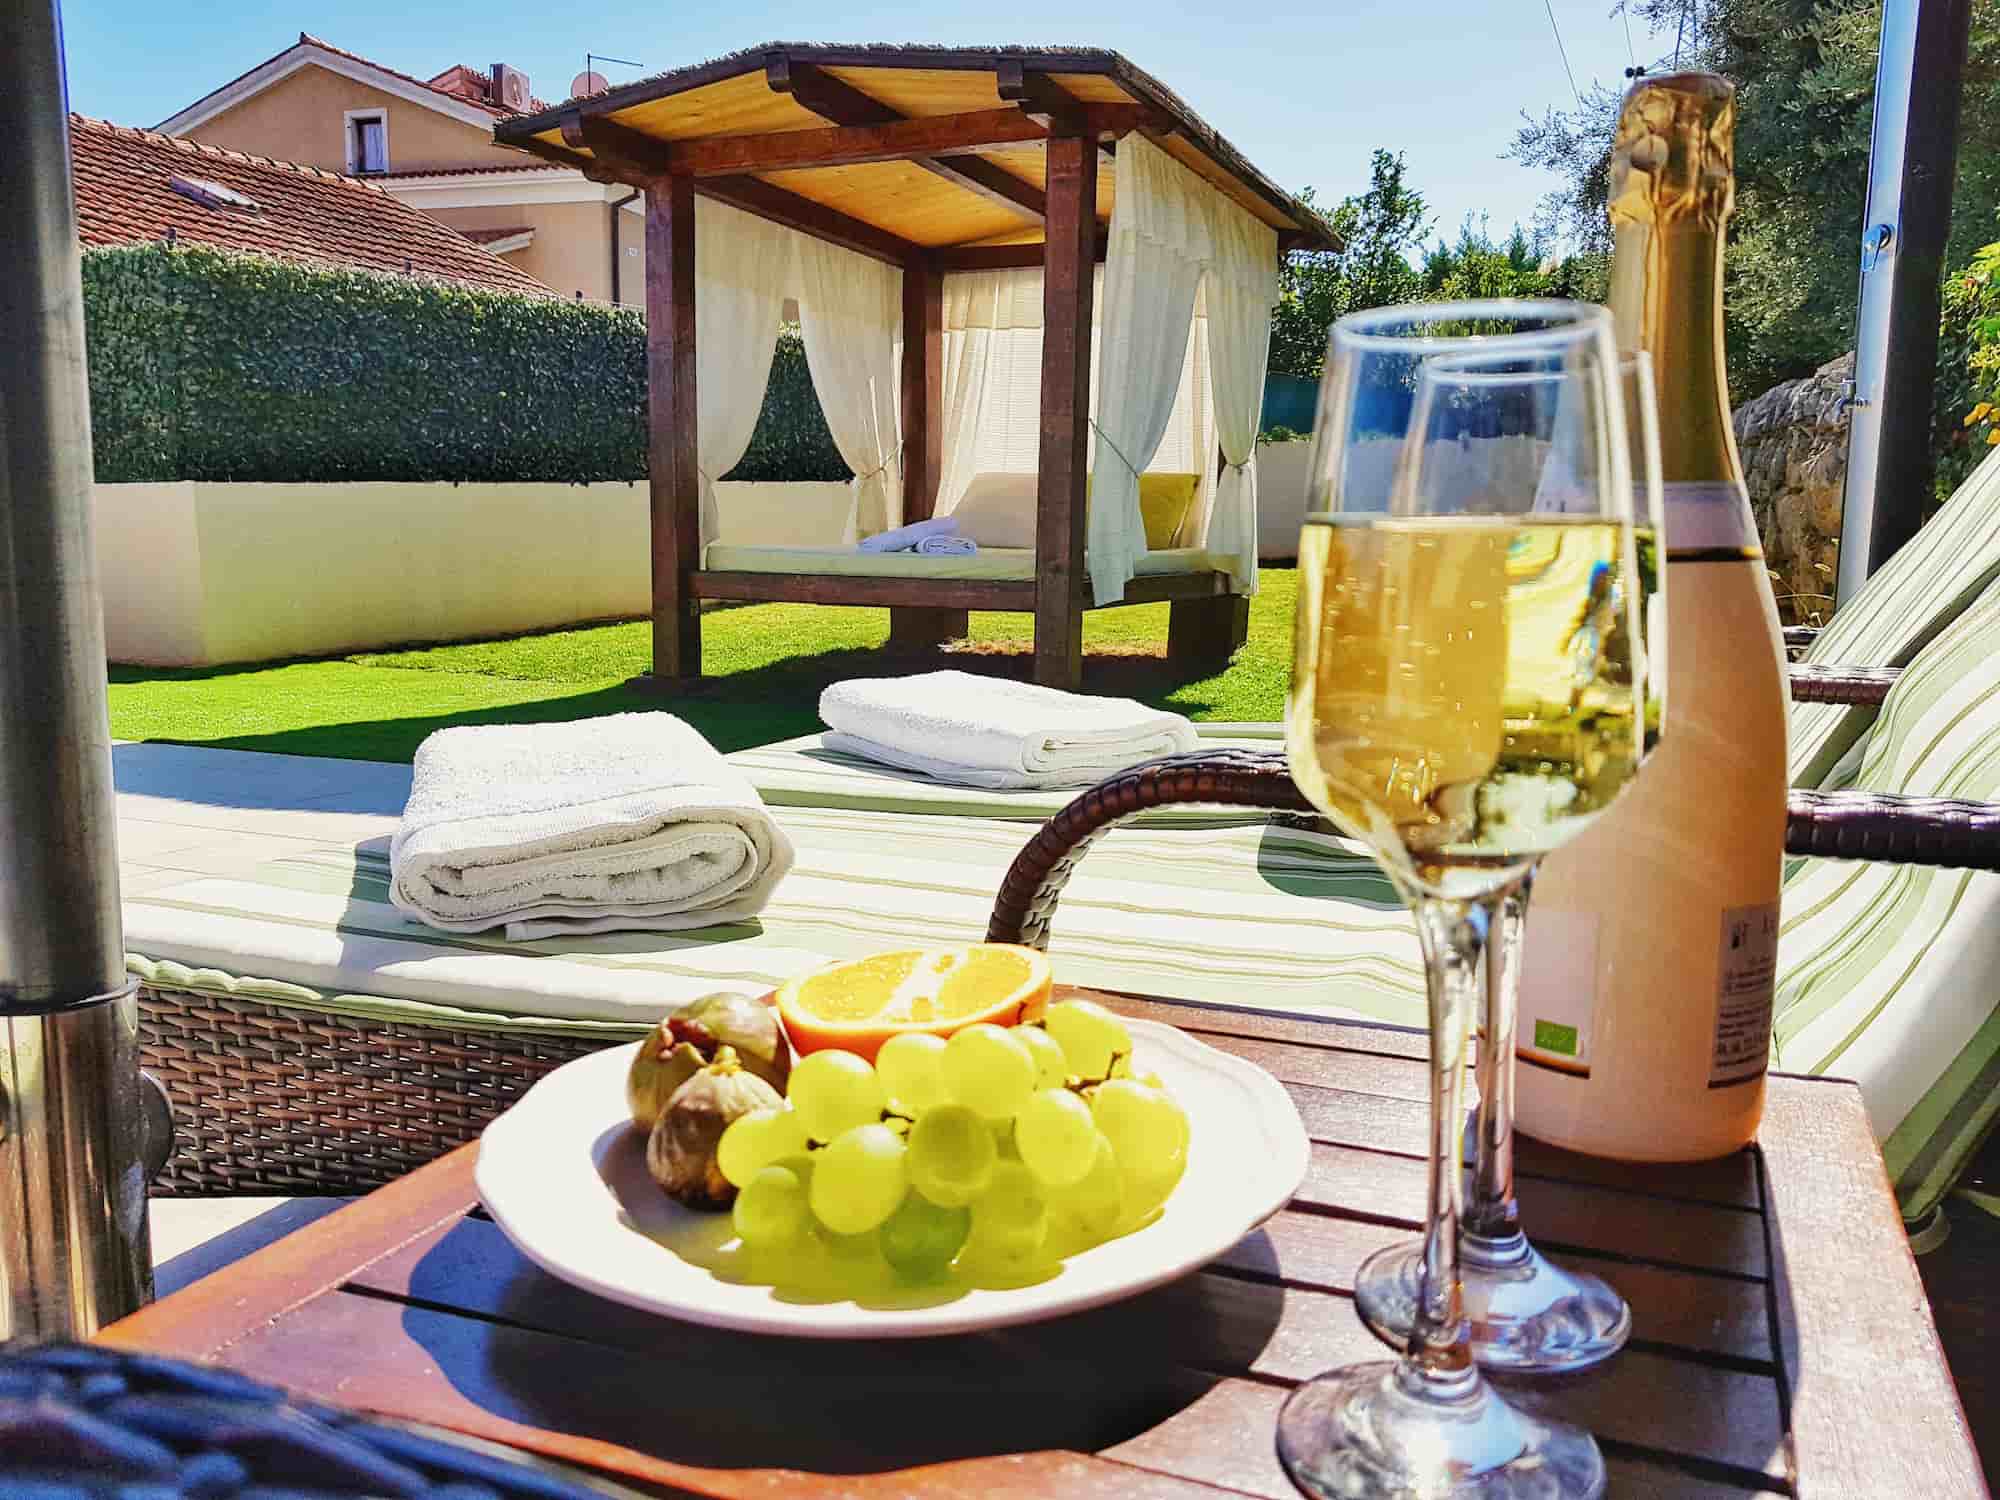 Ferienvilla mit Pool in Kroatien, Teller mit Feigen, Orangen und Trauben und Champagner